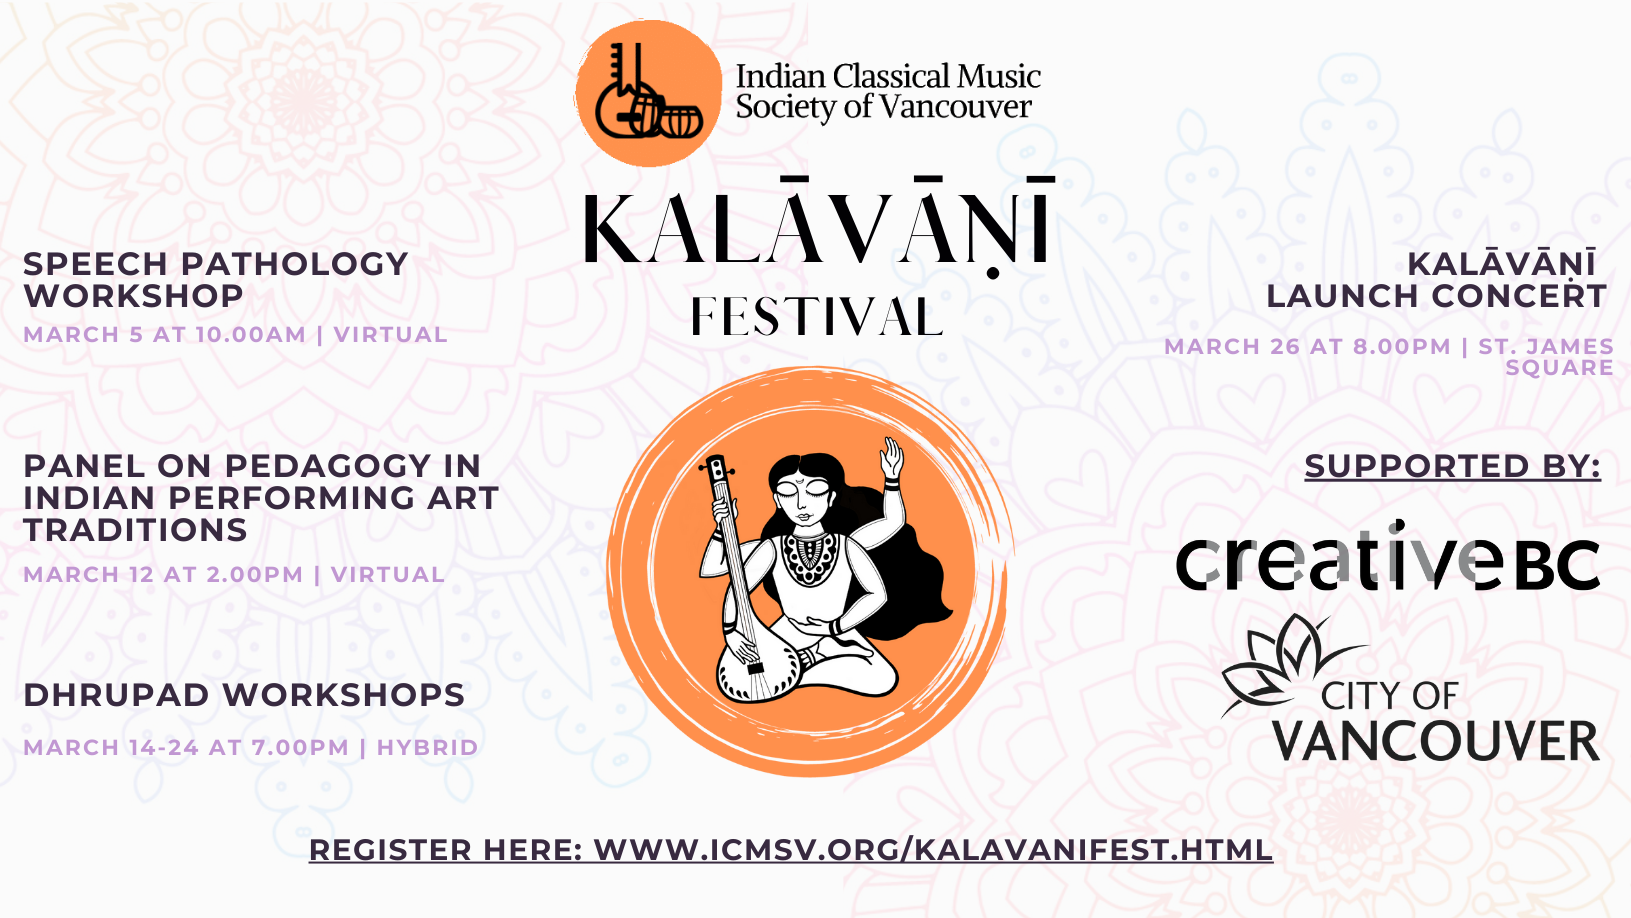 Kalavani Festival logo with descriptive text.